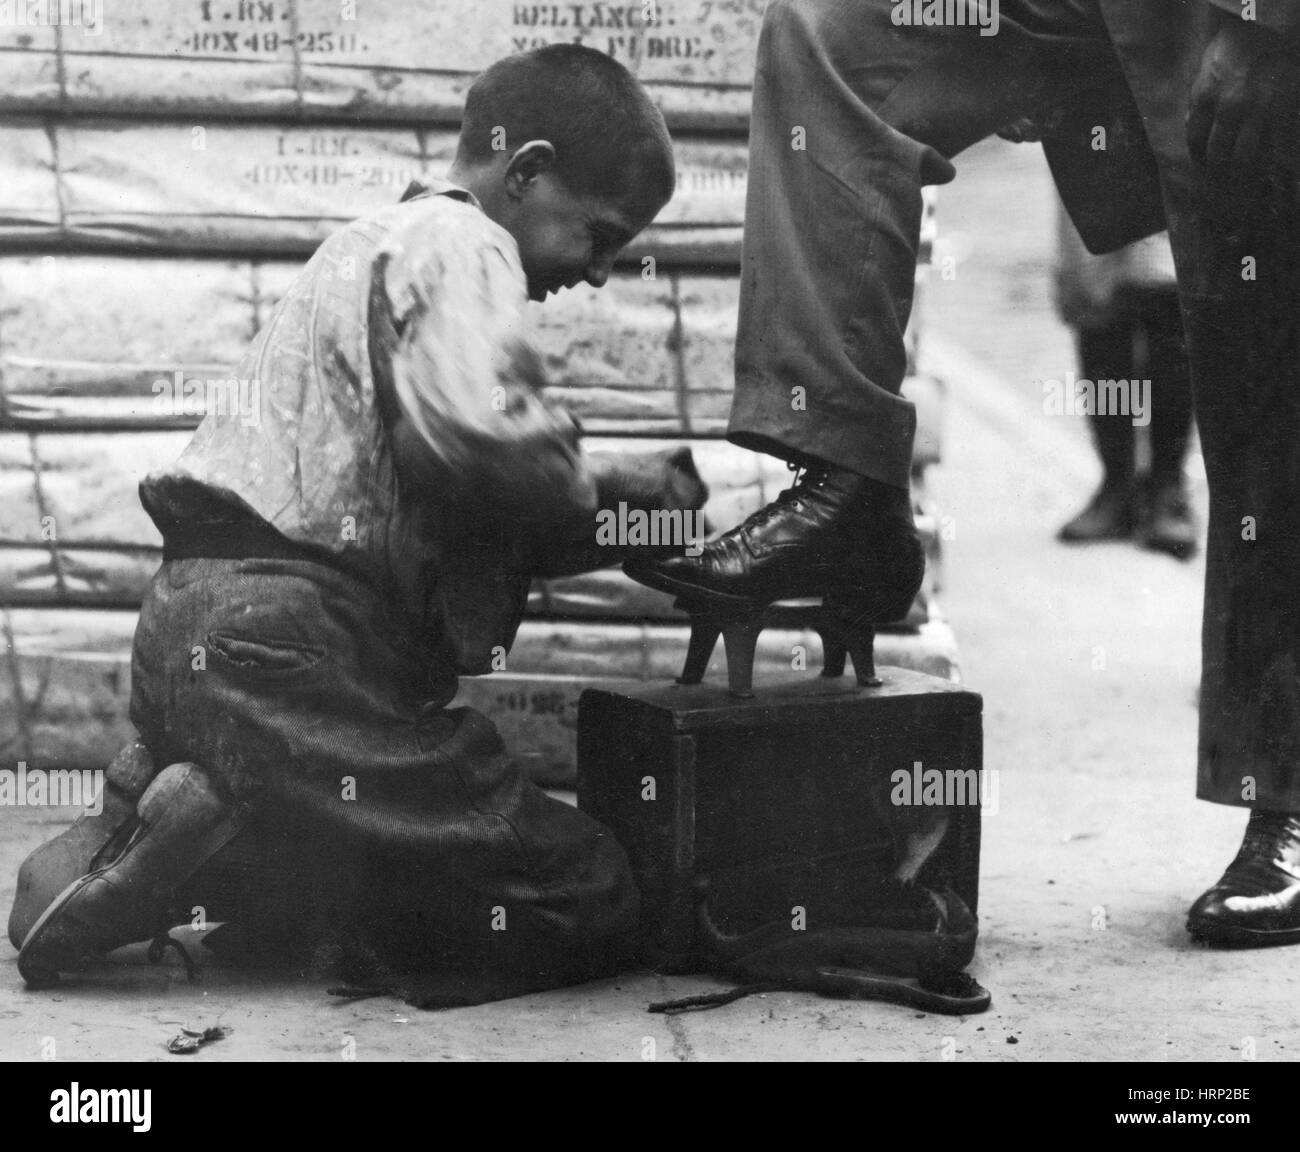 shoeshine boy